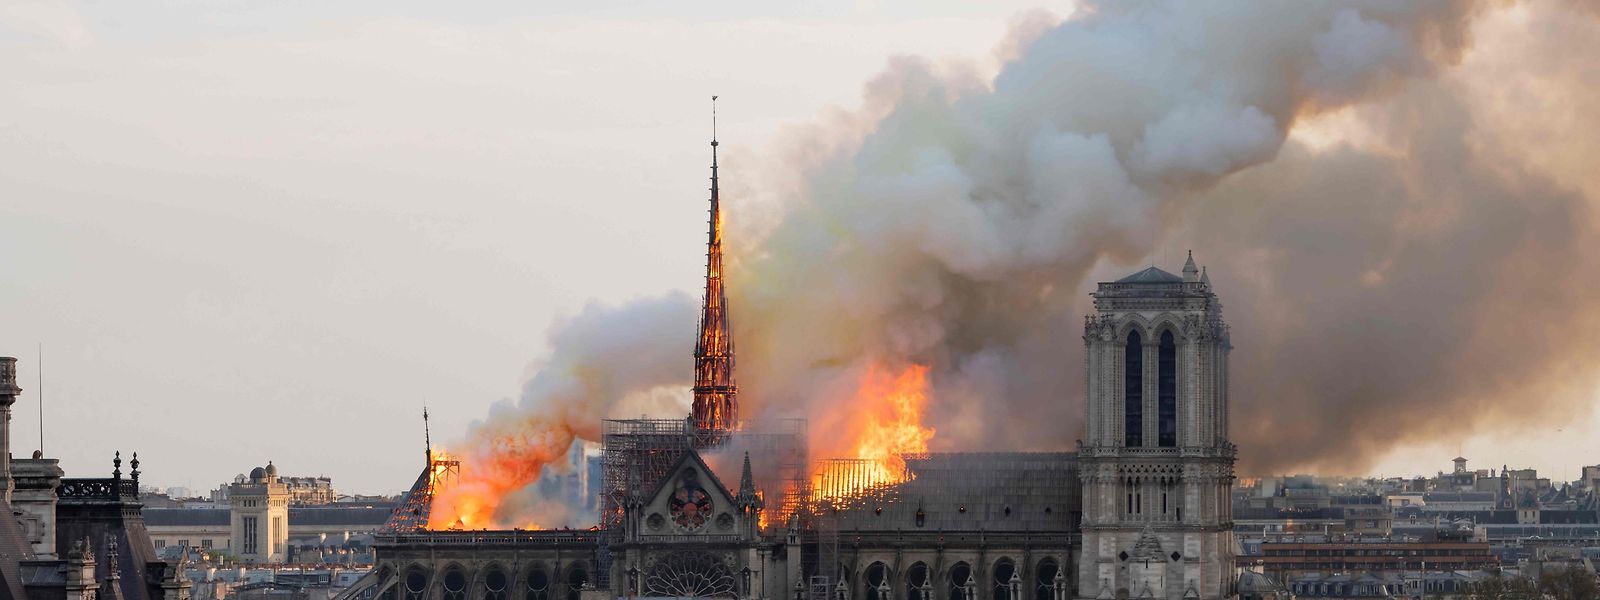 Am Montagabend gegen 18.30 Uhr brach ein Feuer in der Kathedrale Notre-Dame de Paris aus - erst am darauffolgenden Tag, um 10 Uhr, war der Brand vollends gelöscht.